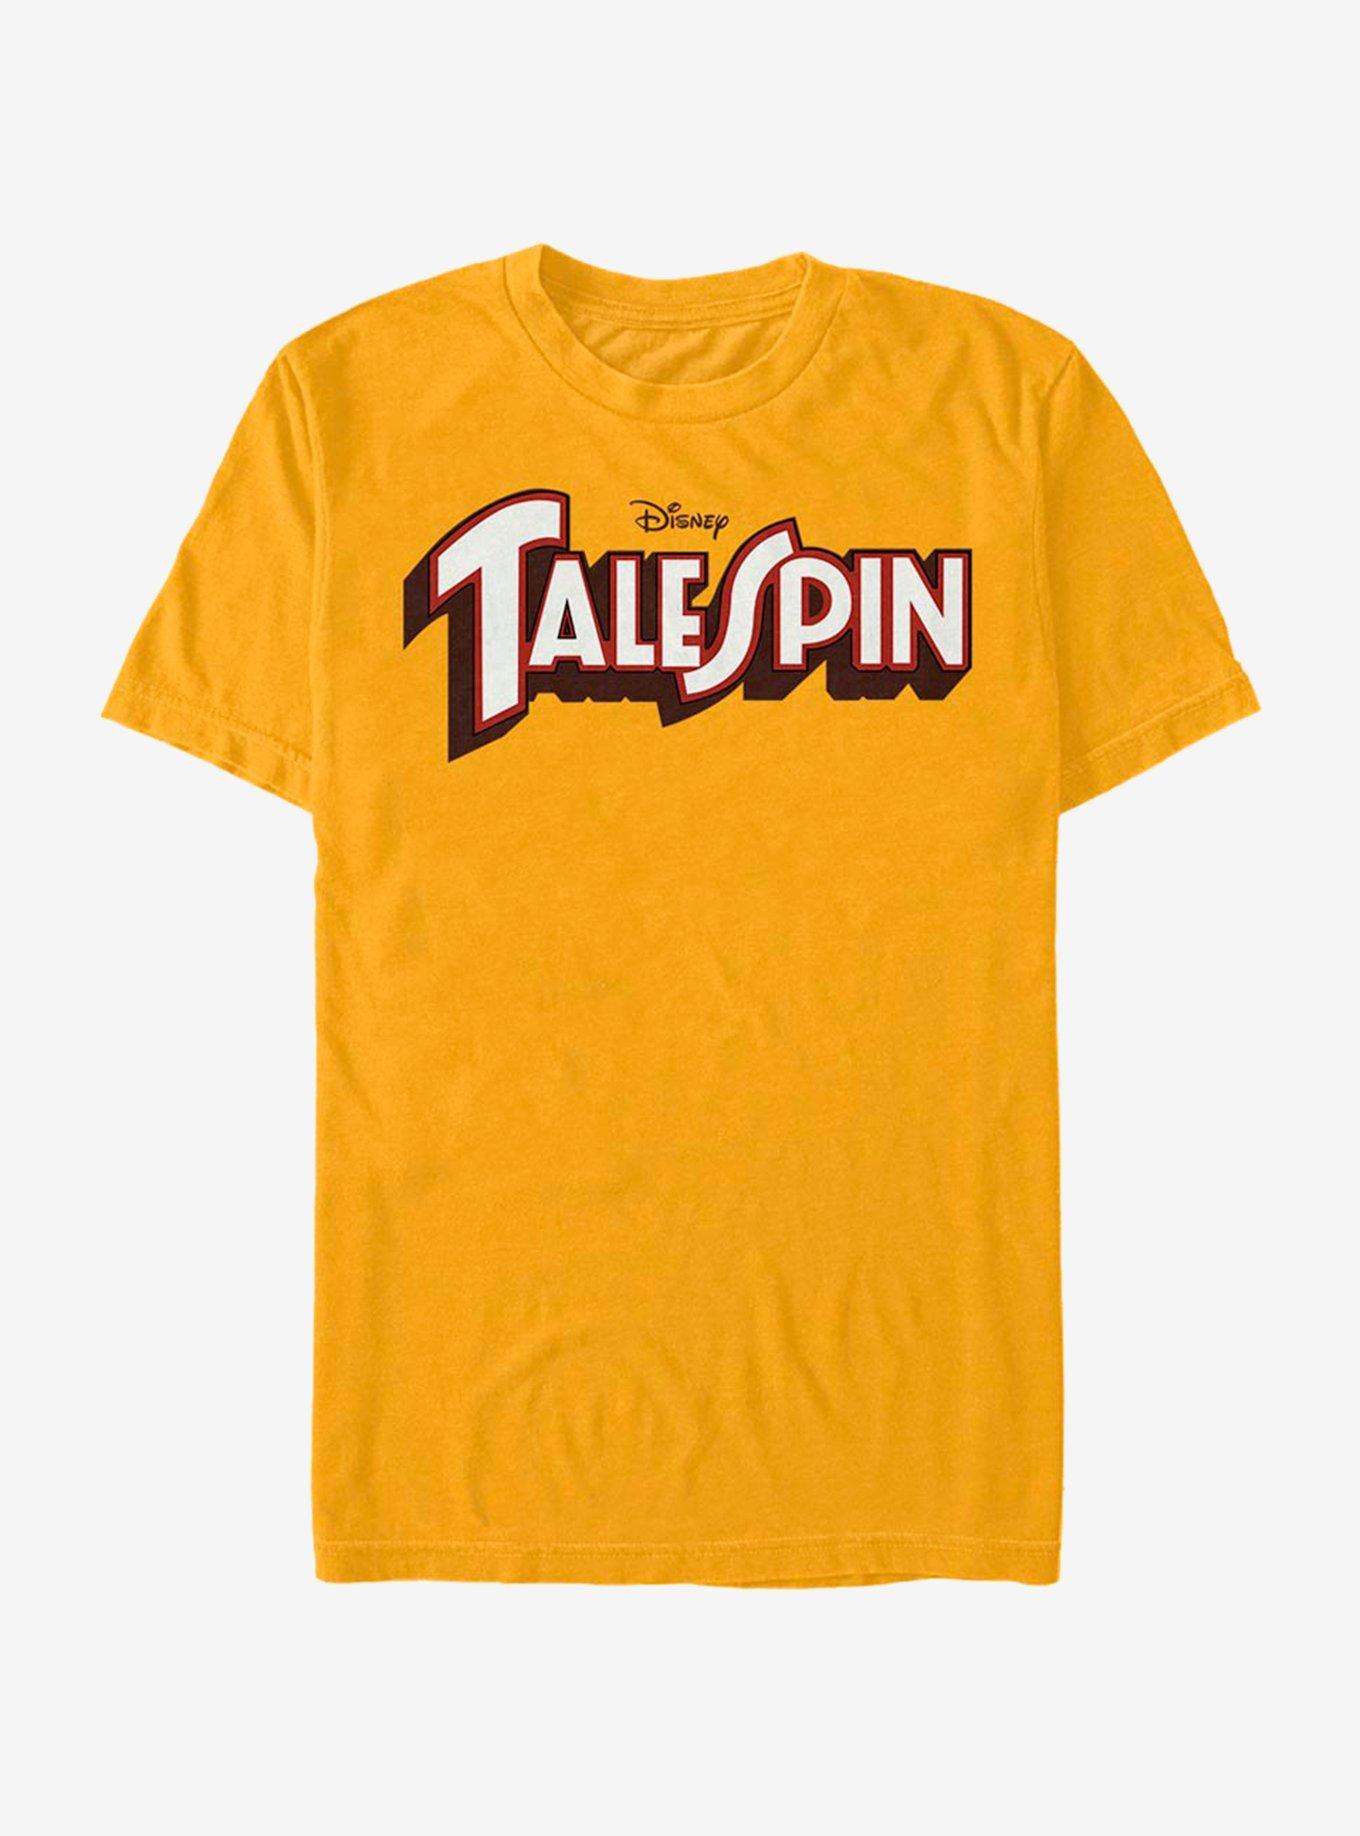 Disney TaleSpin Logo Spin T-Shirt, GOLD, hi-res